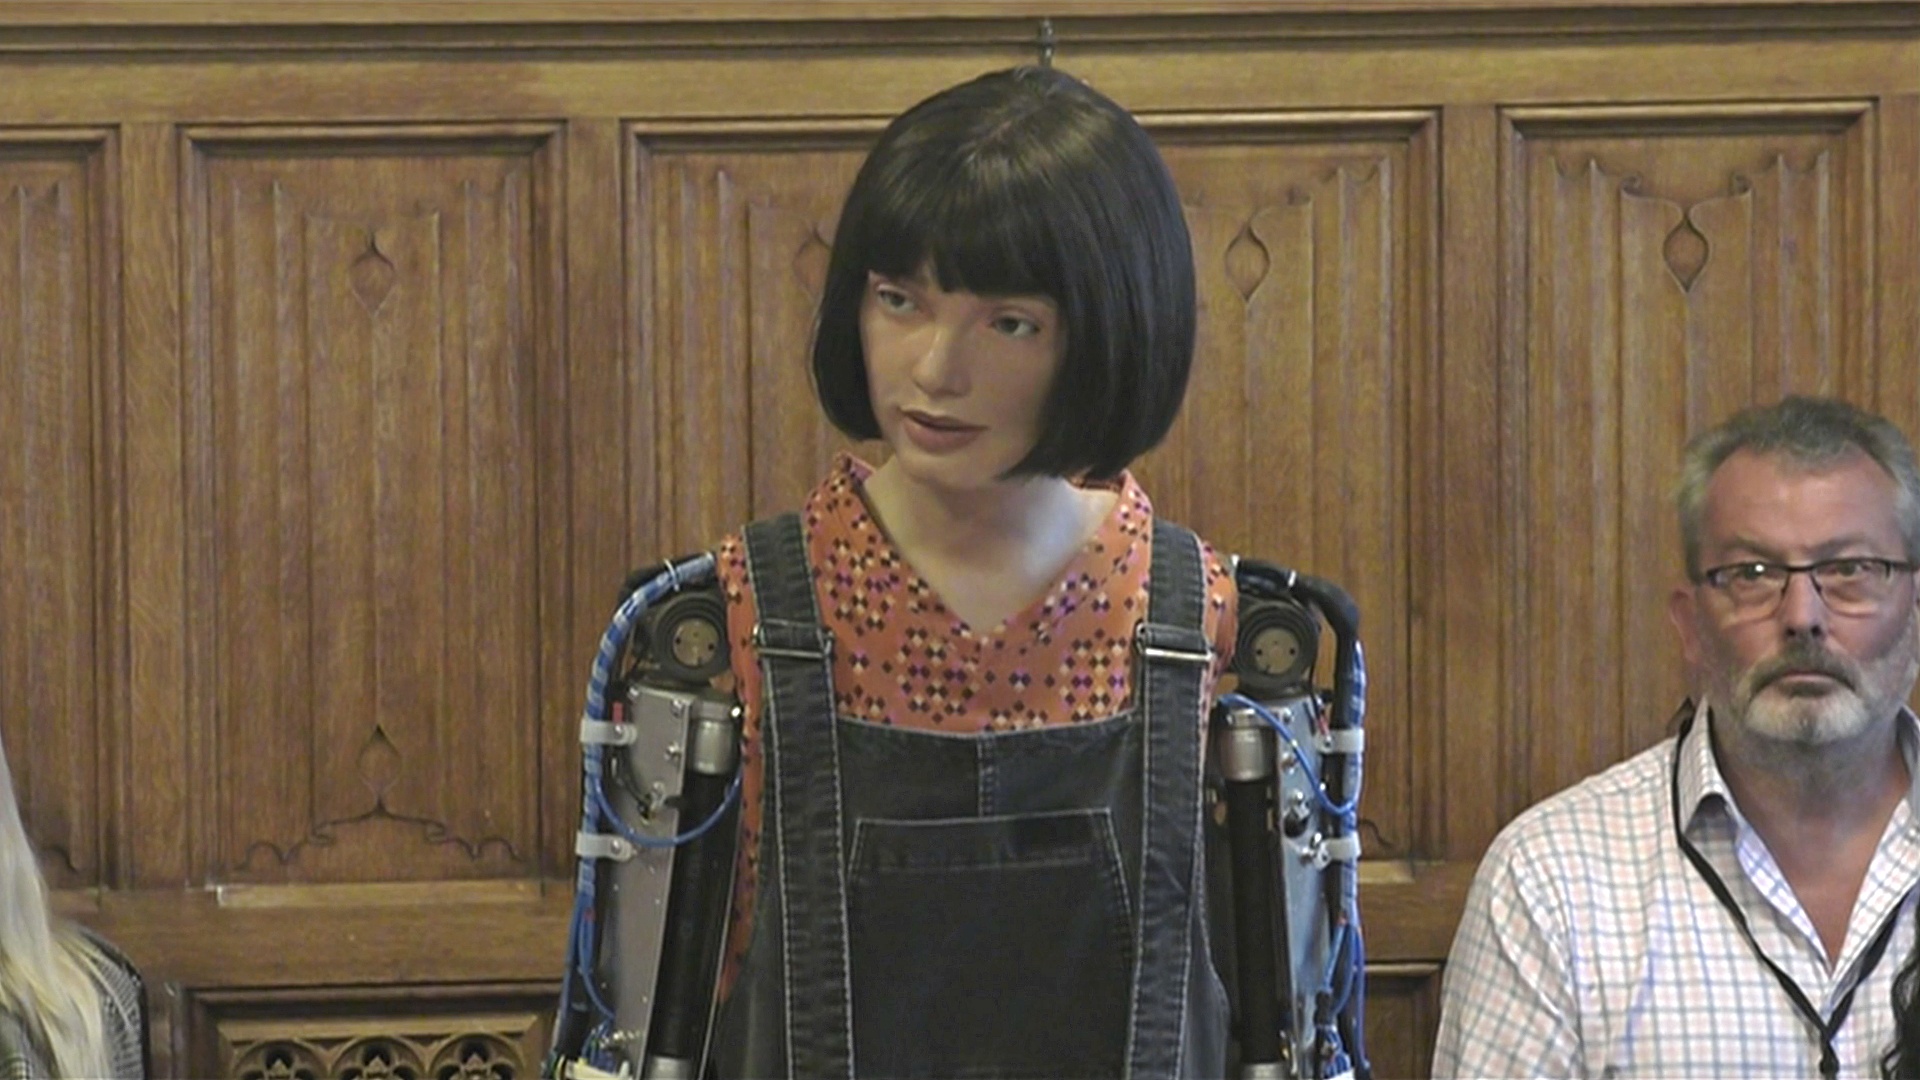 Как робот давал показания в Палате лордов